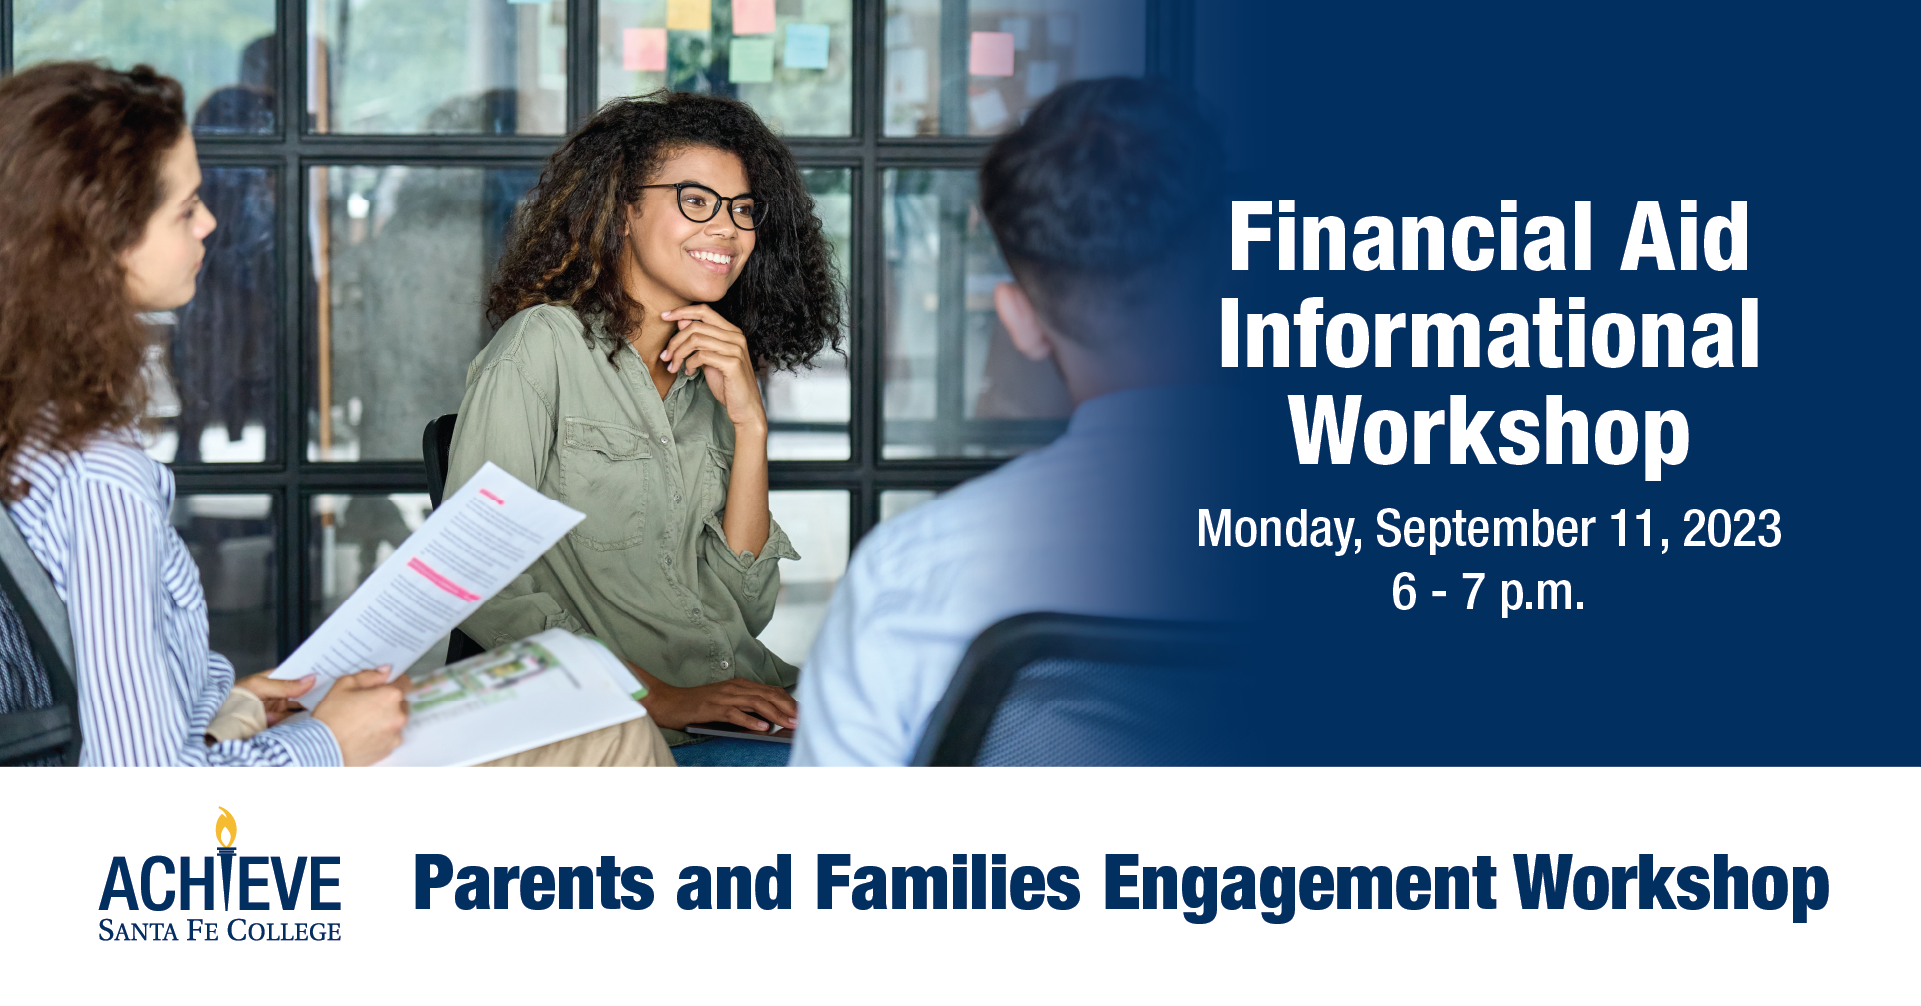 Financial Aid Workshop (SF Achieve Parents/Families Engagement Workshop